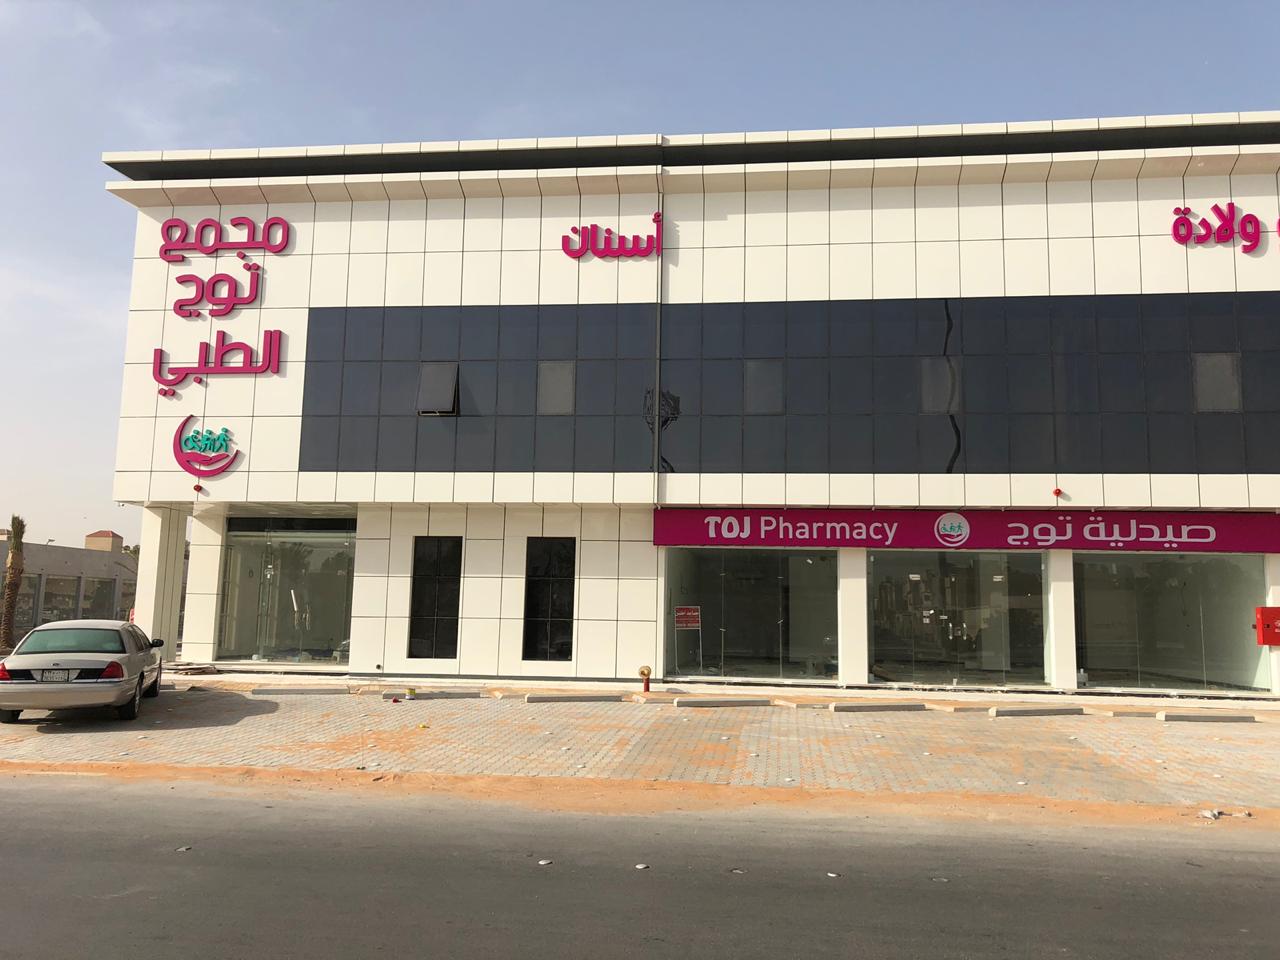 معارض تجارية للإيجار في الرياض حي قرطبة 0505264771 للإيجار في الرياض  P_1145ovmb21